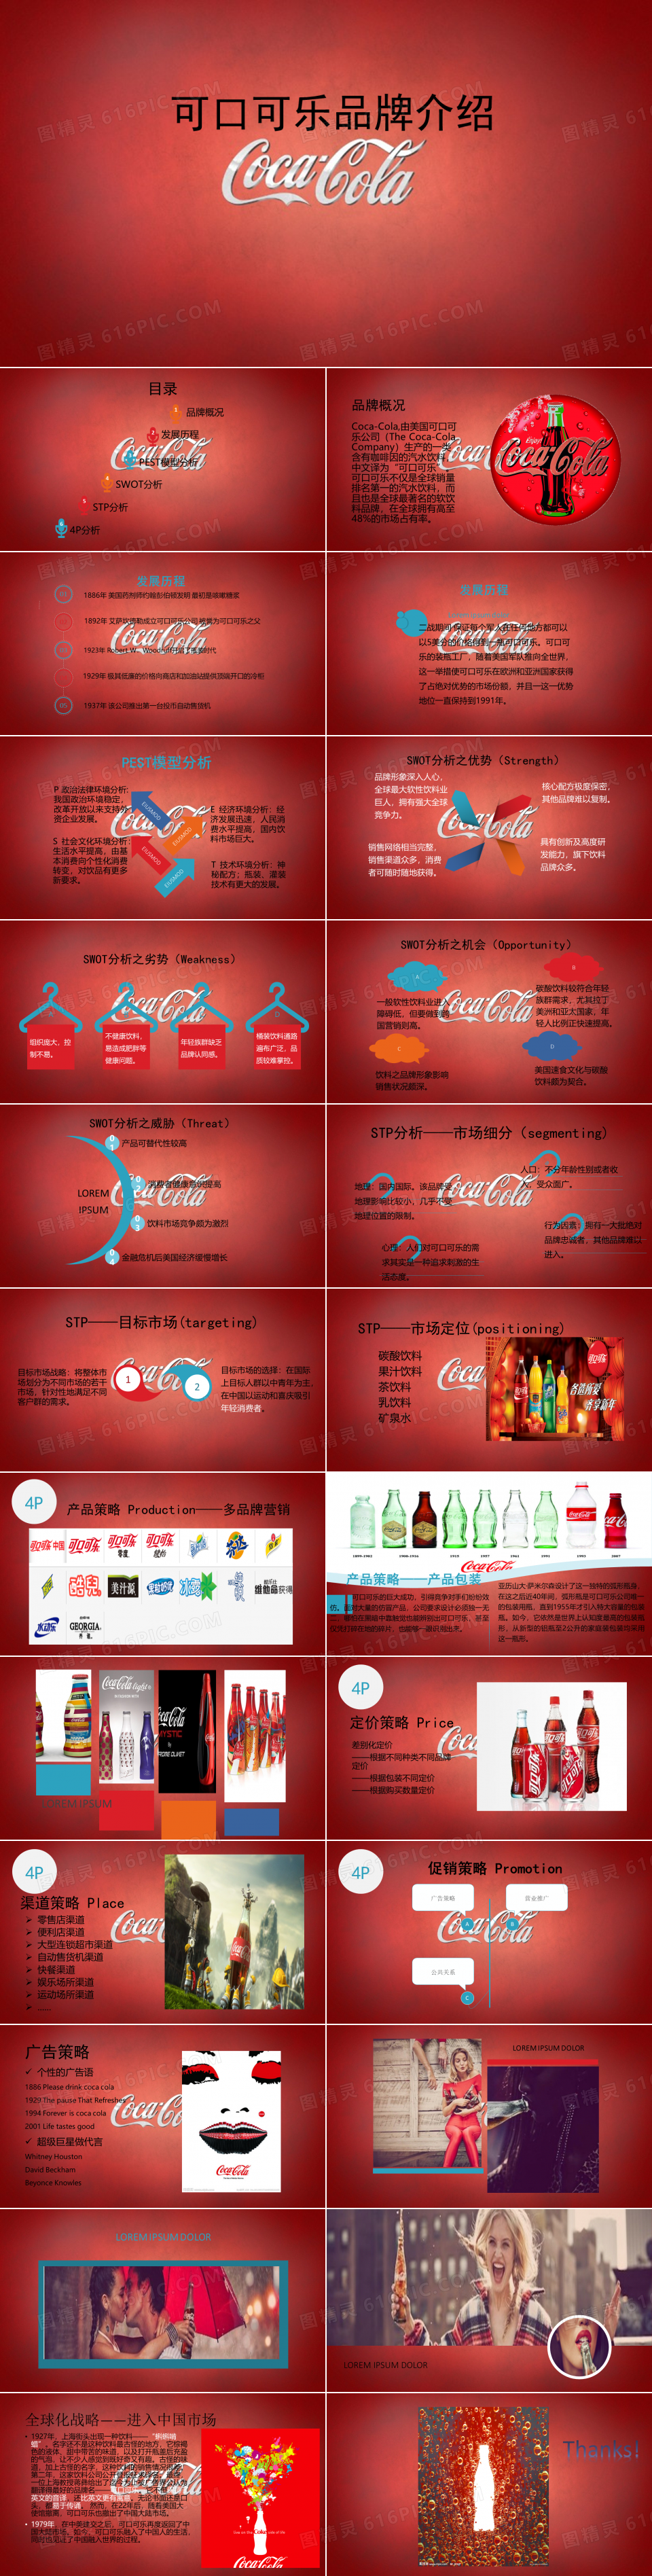 可口可乐品牌分析PPT模板